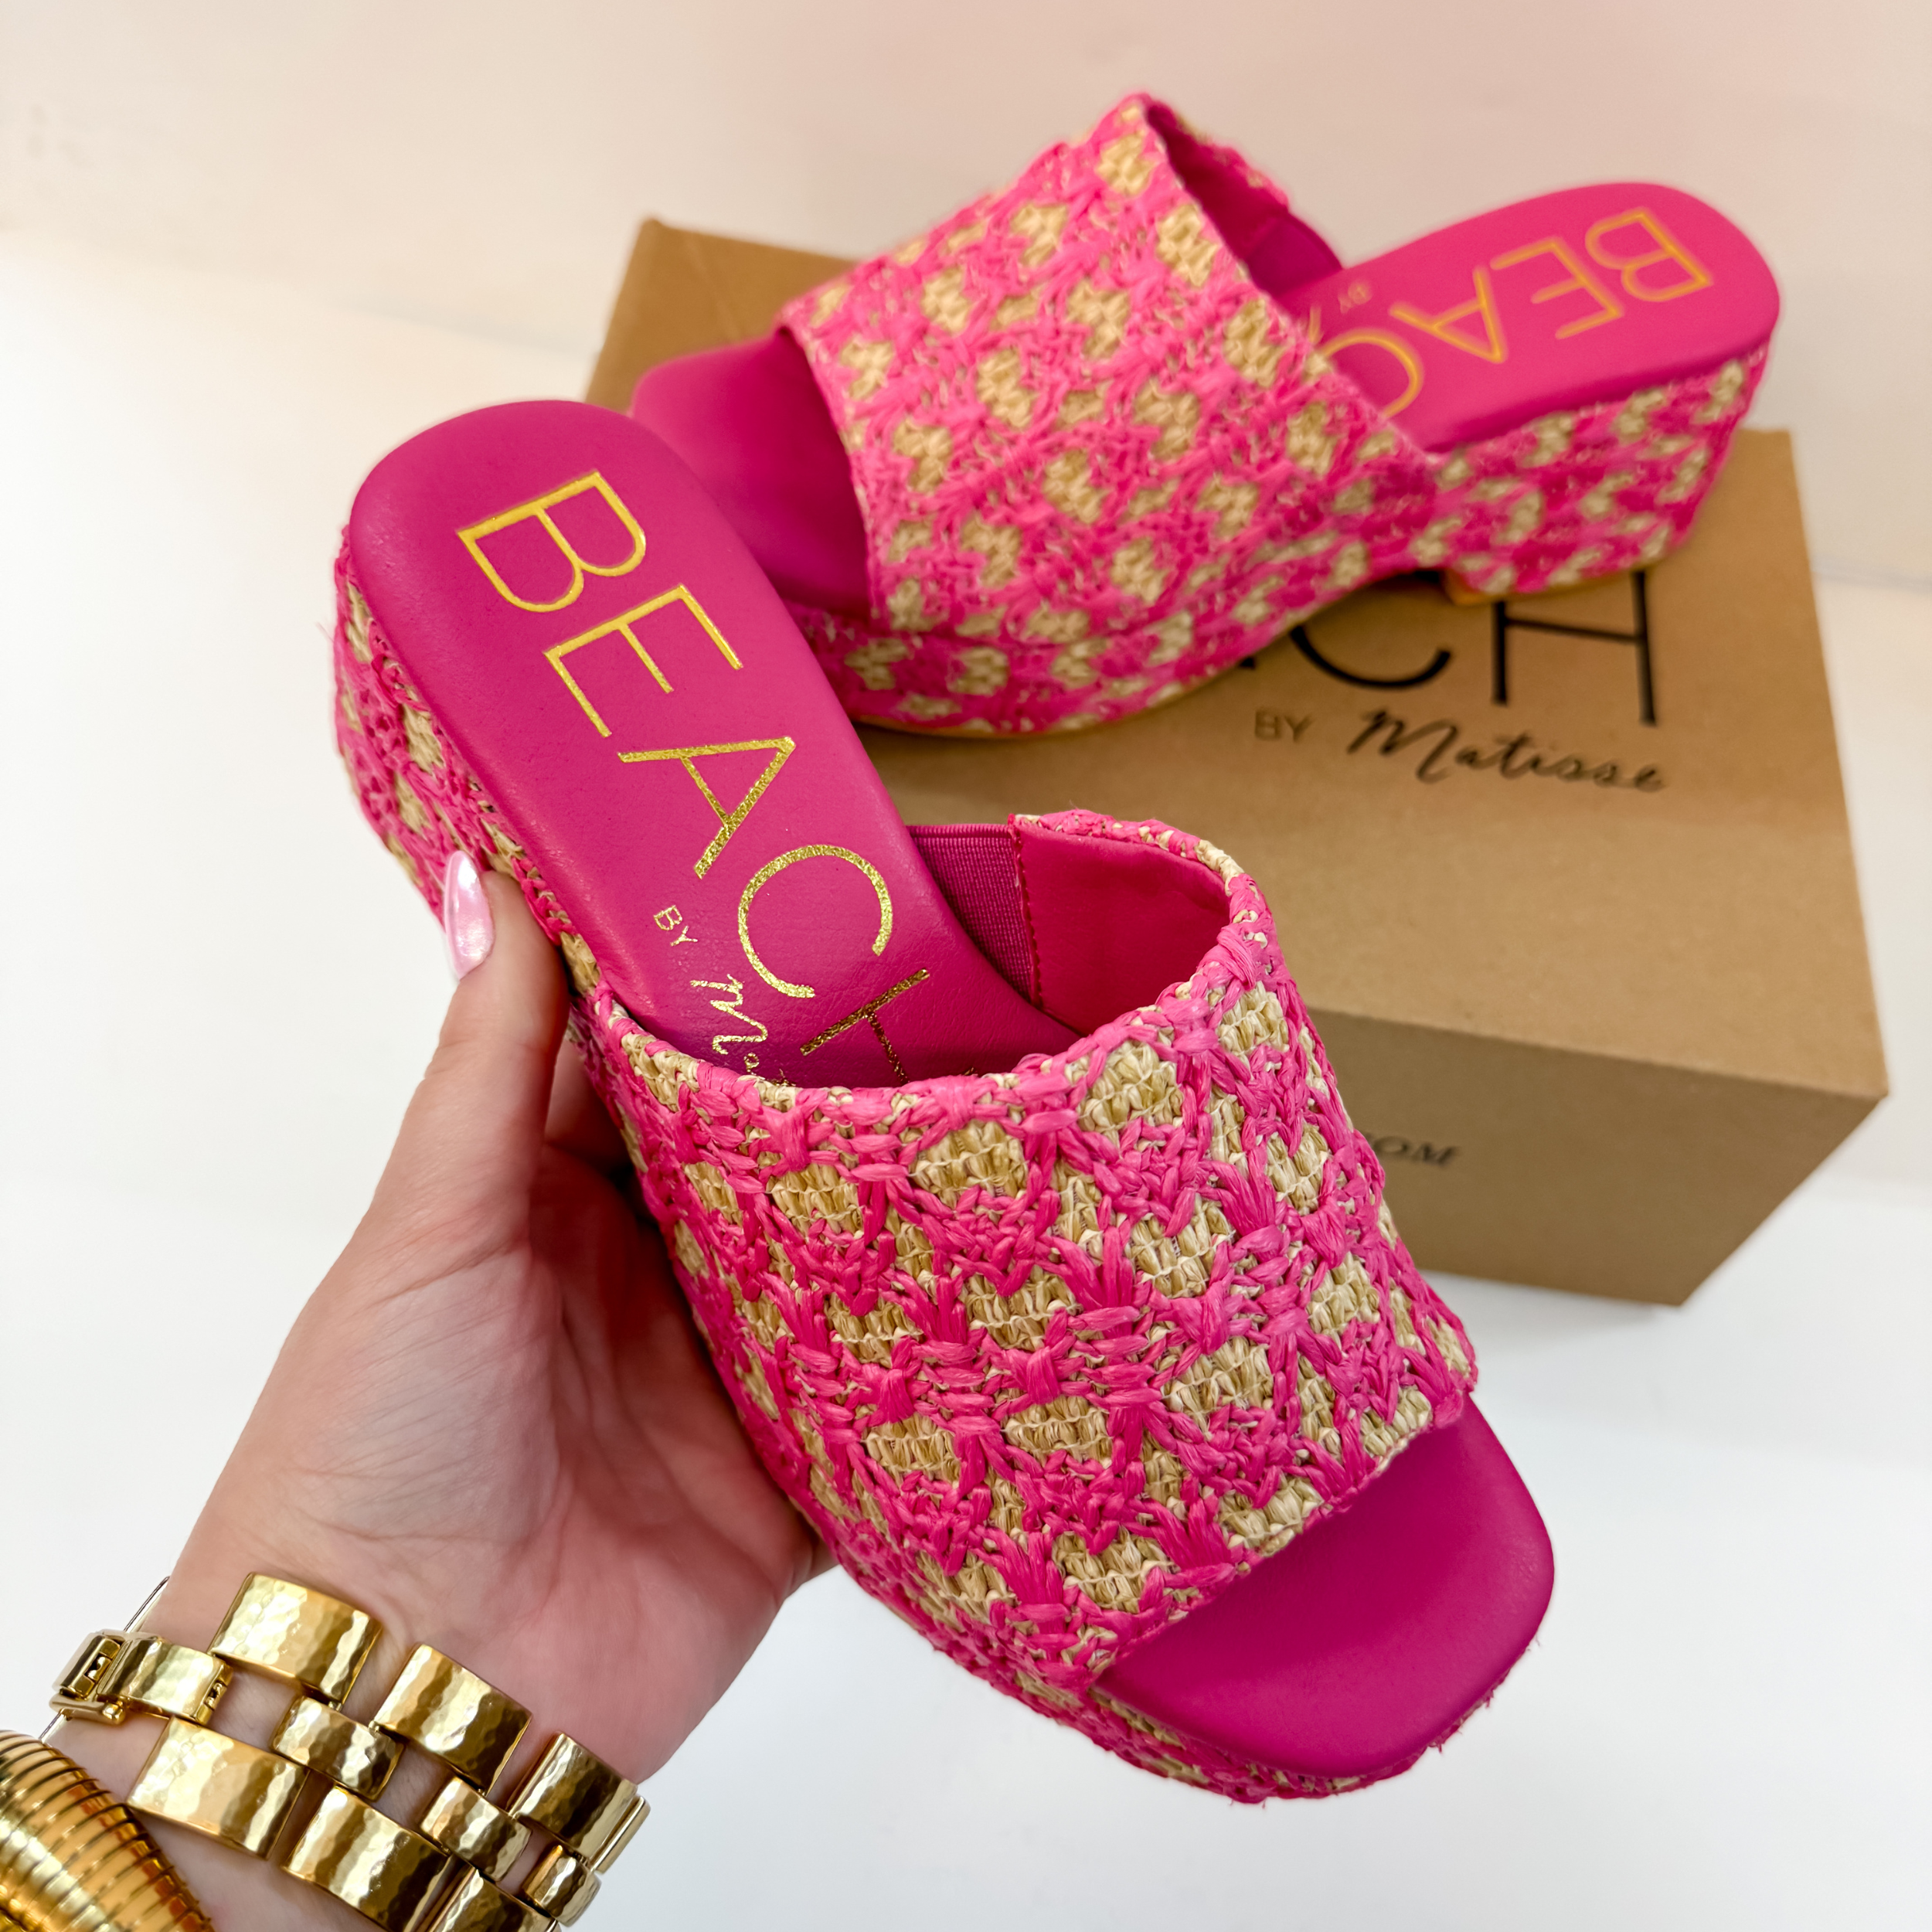 Matisse | Cruz Multi-Color Platform Sandal in Hot Pink - Giddy Up Glamour Boutique